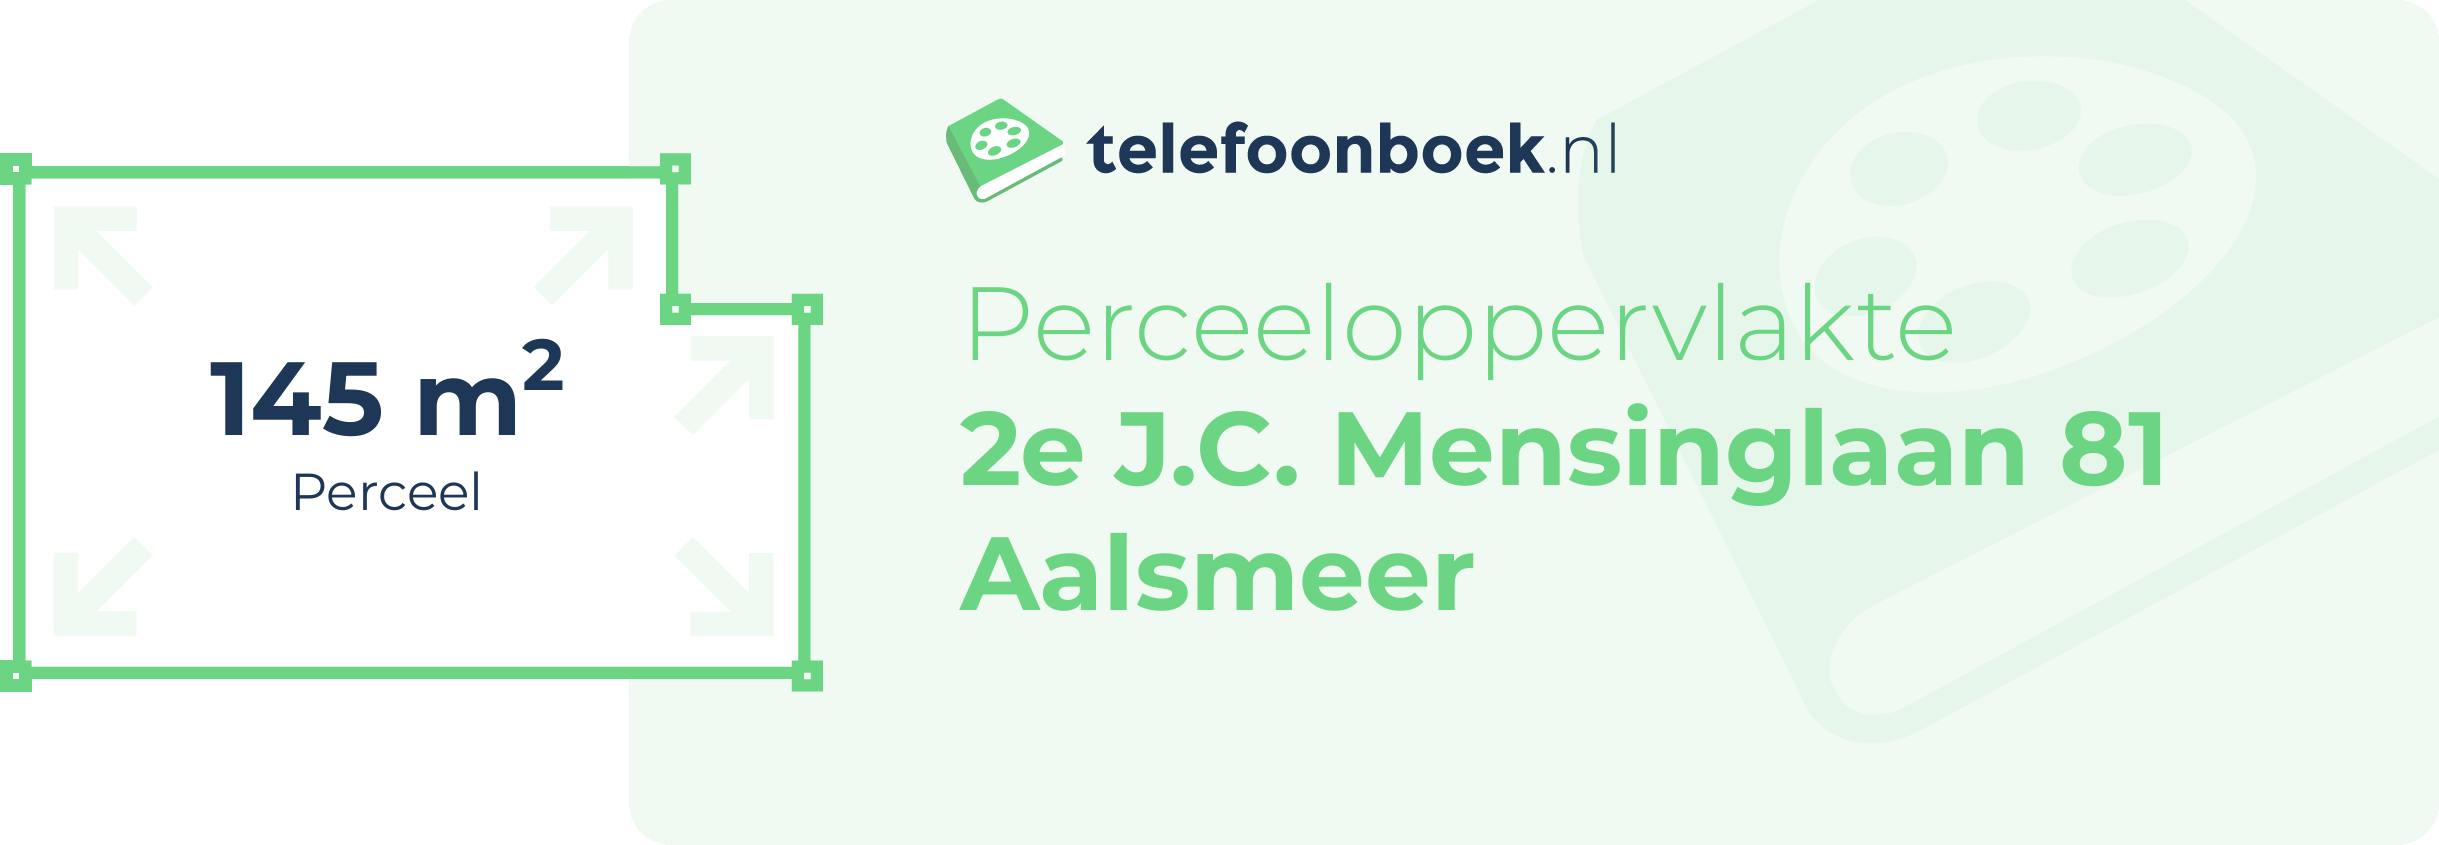 Perceeloppervlakte 2e J.C. Mensinglaan 81 Aalsmeer